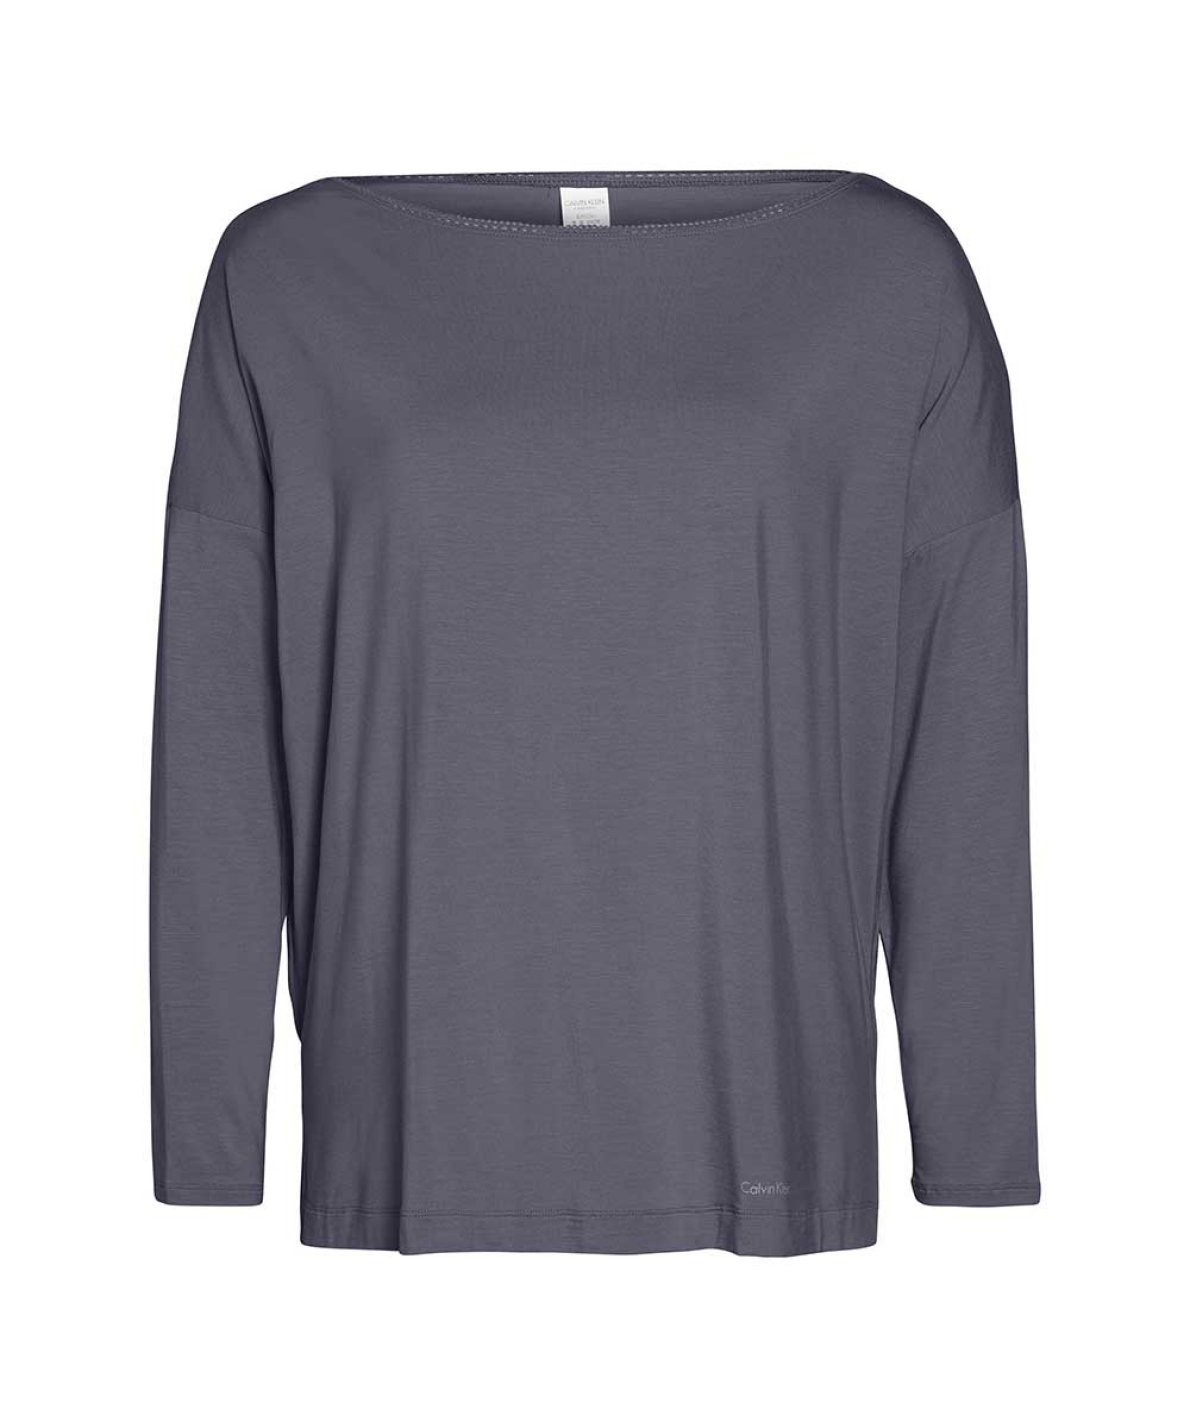 Dámské triko na spaní model 8344650 šedá šedá M - Calvin Klein